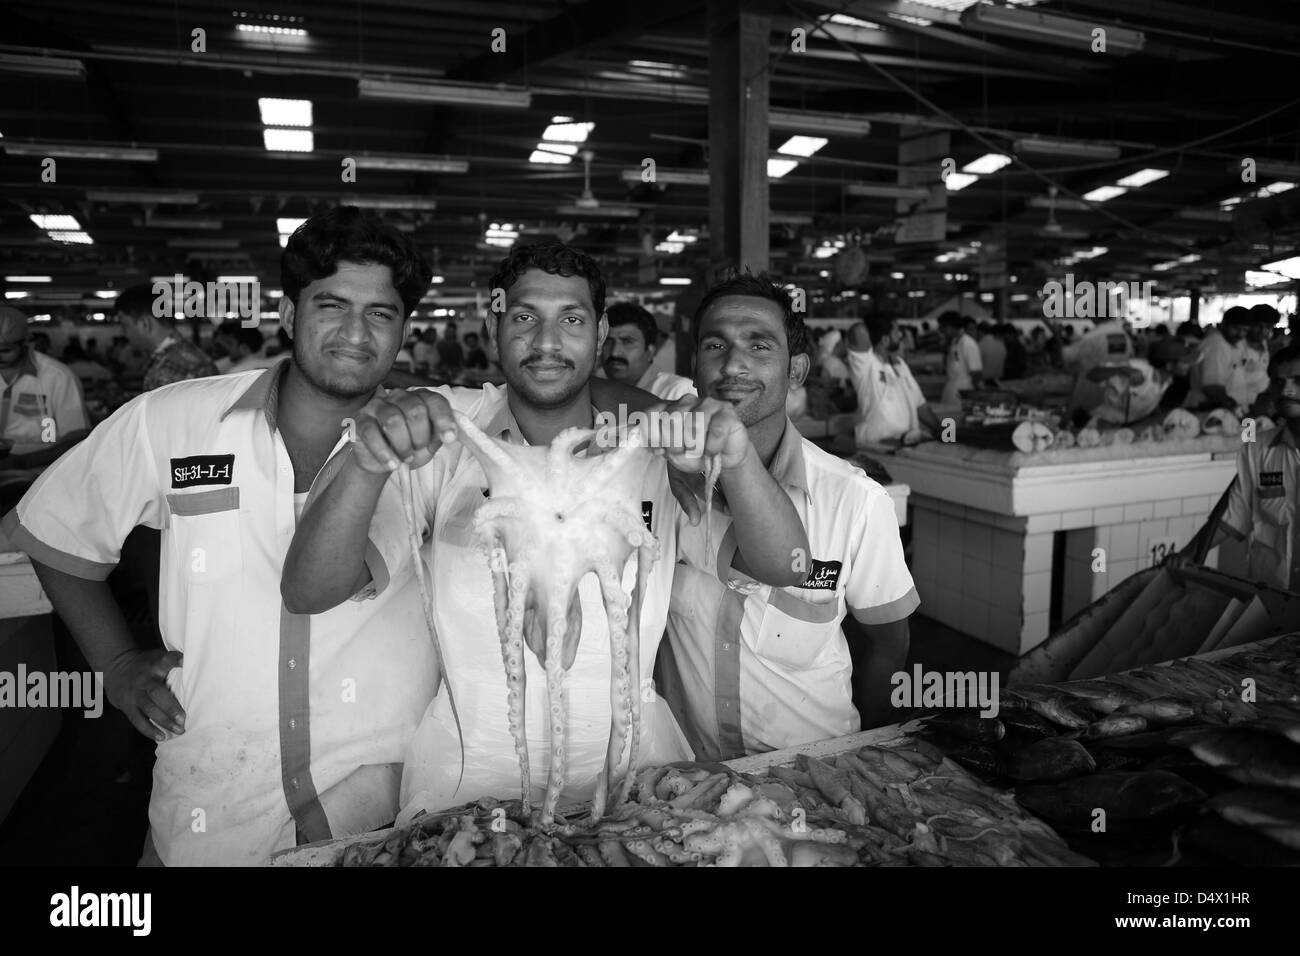 Group of men at fish market holding up octopus, Dubai, United Arab Emirates Stock Photo